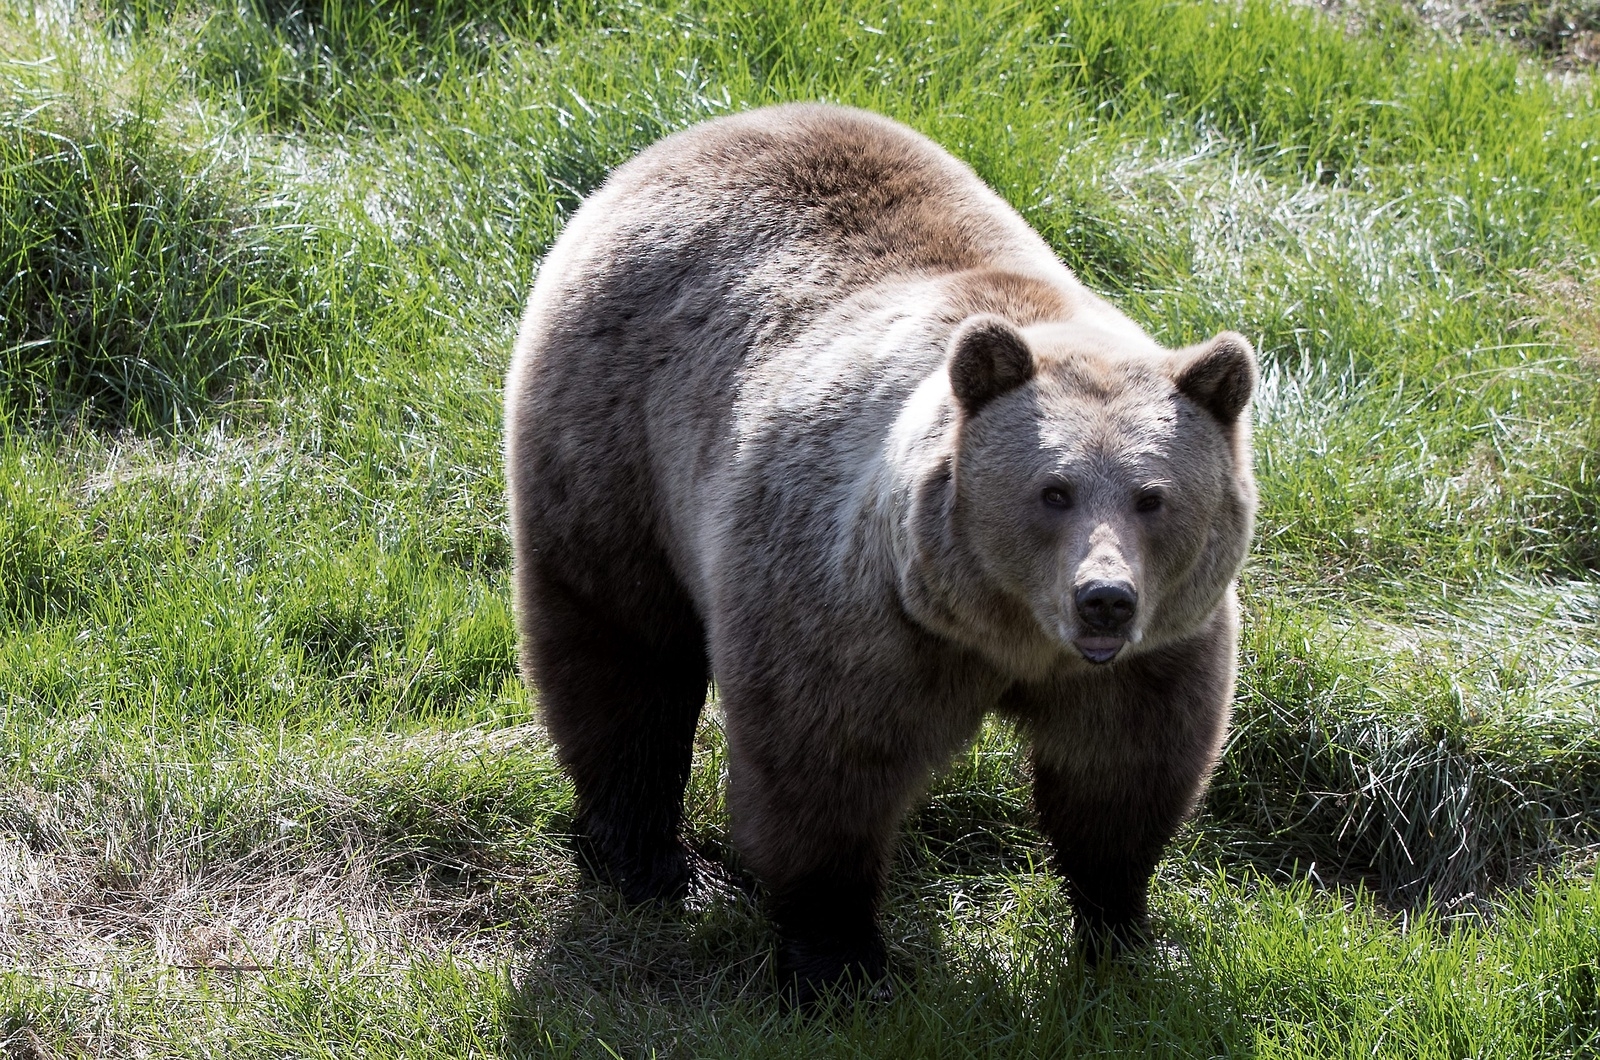 Nelly Carlsson stötte på oväntat sällskap i skogen (björnen på bilden är dock en annan björn).
Foto: TT